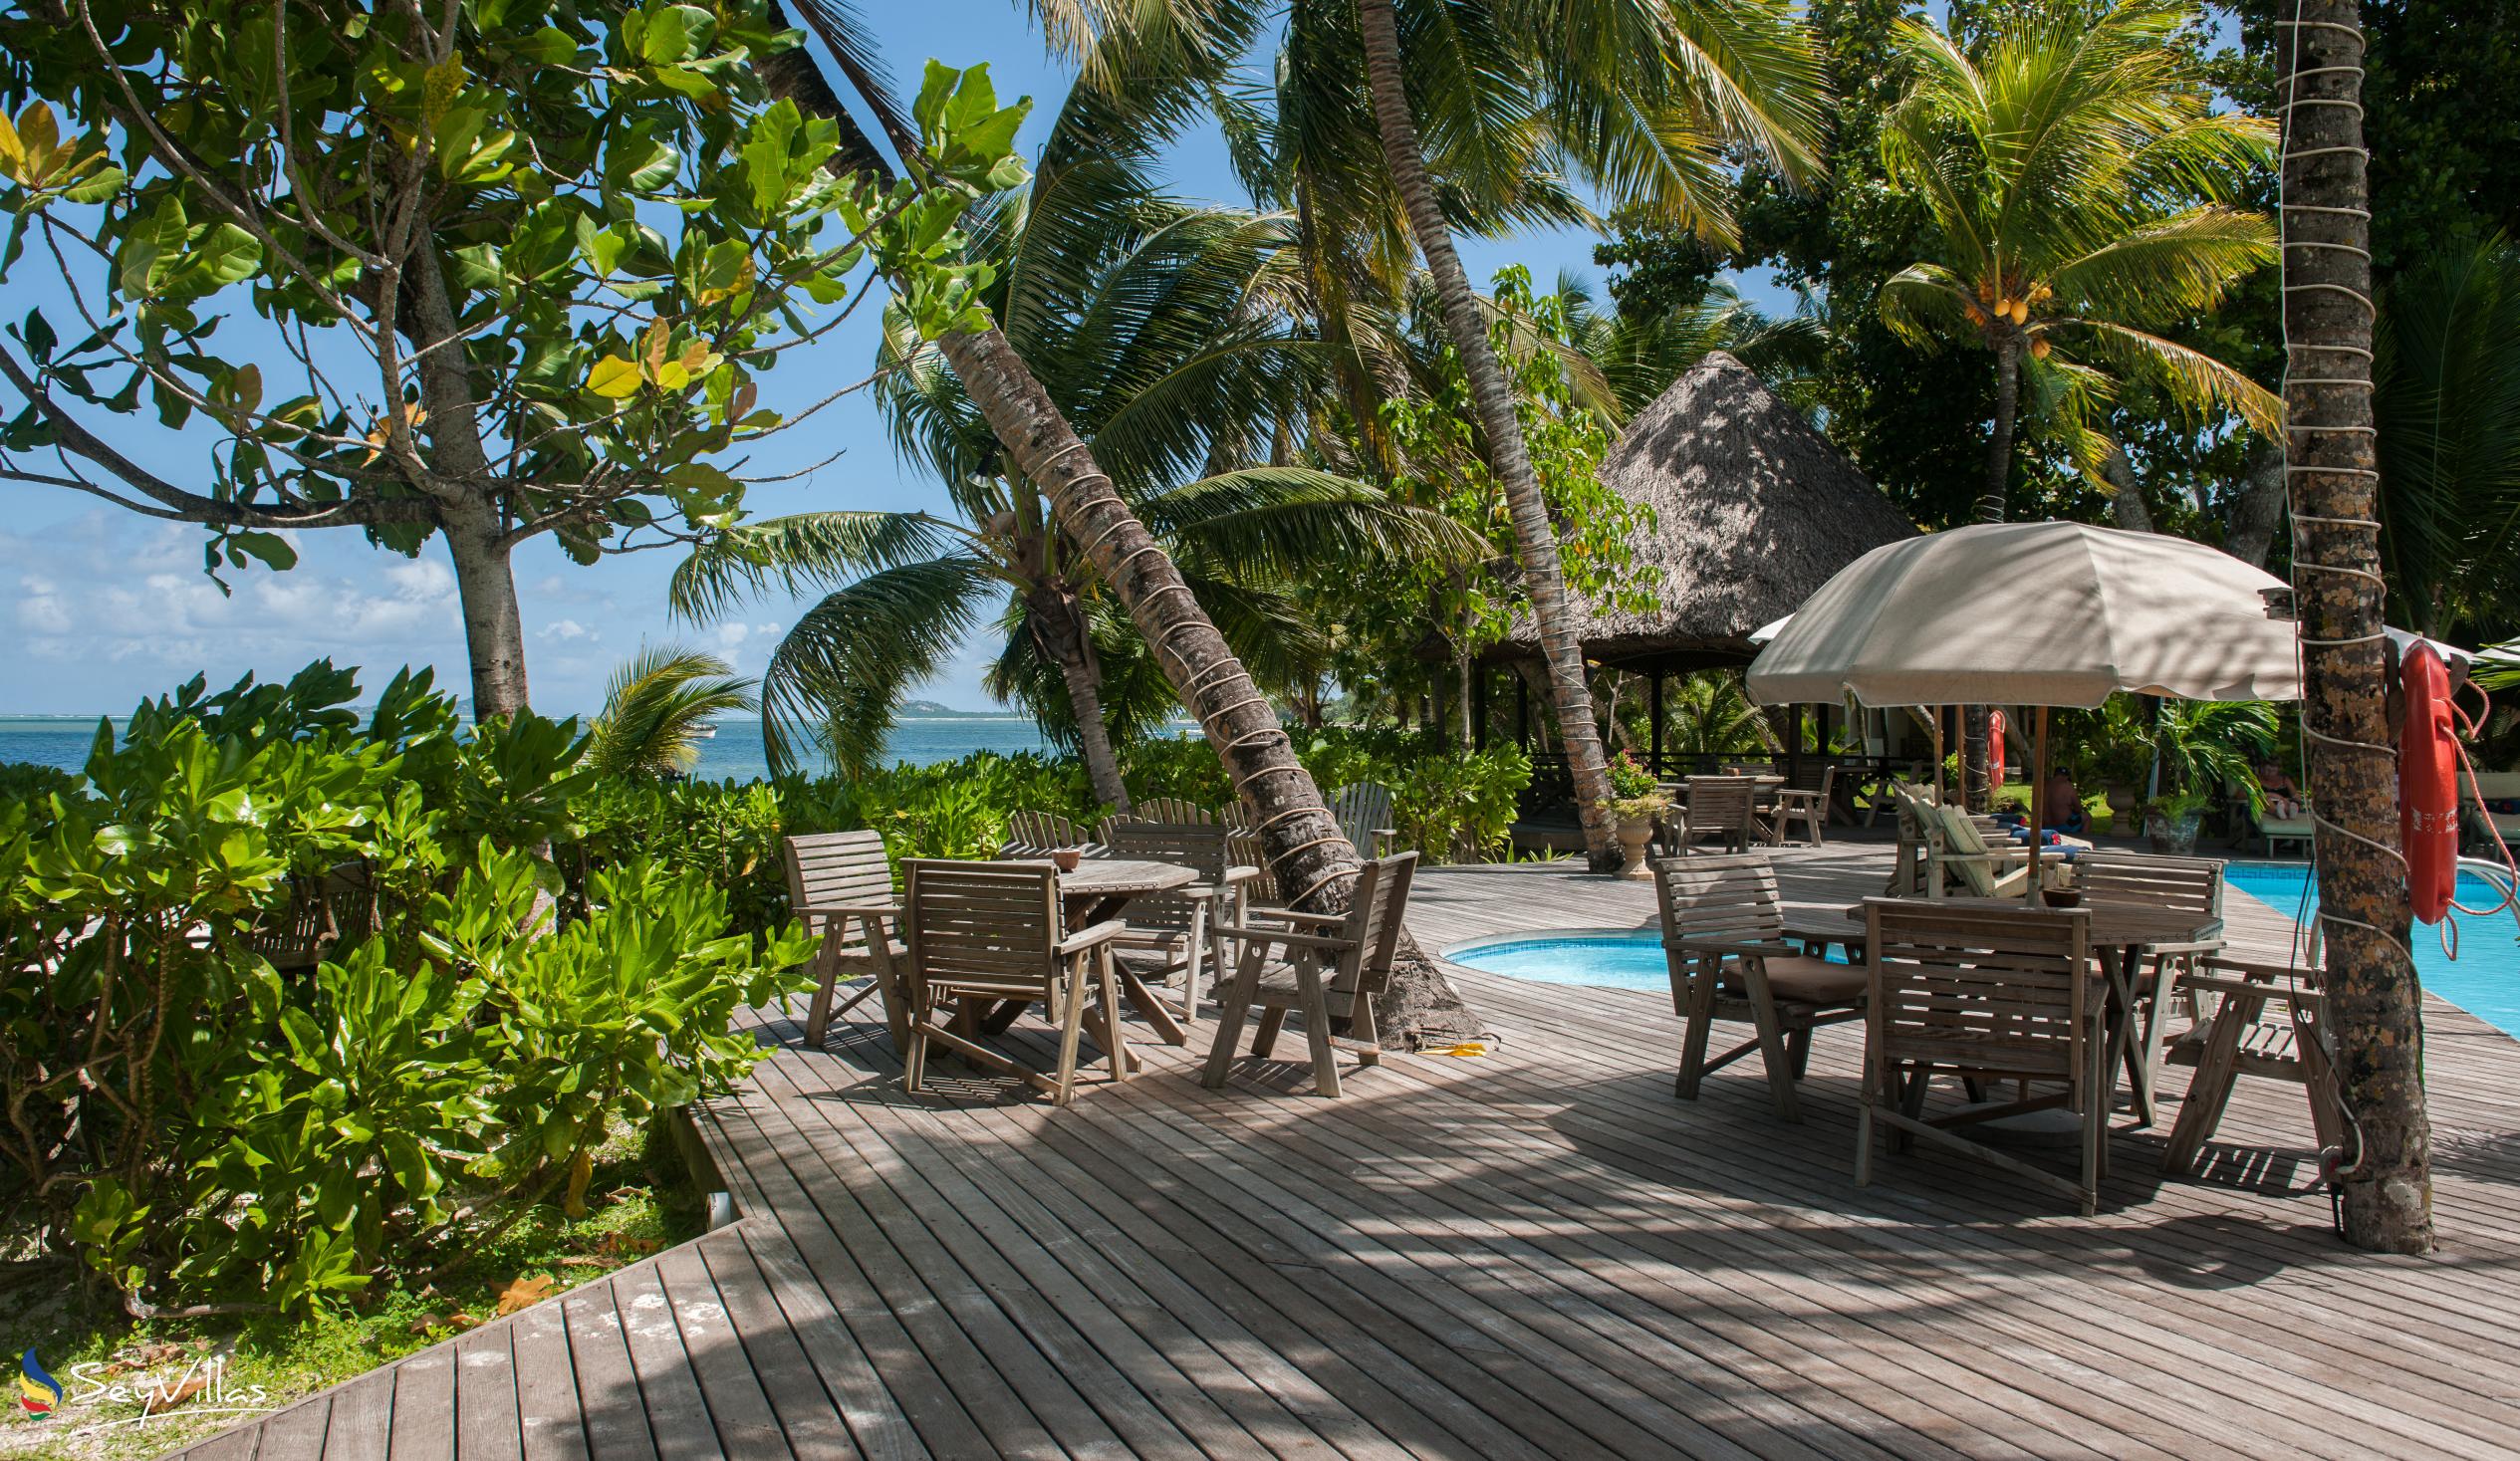 Foto 11: Indian Ocean Lodge - Aussenbereich - Praslin (Seychellen)